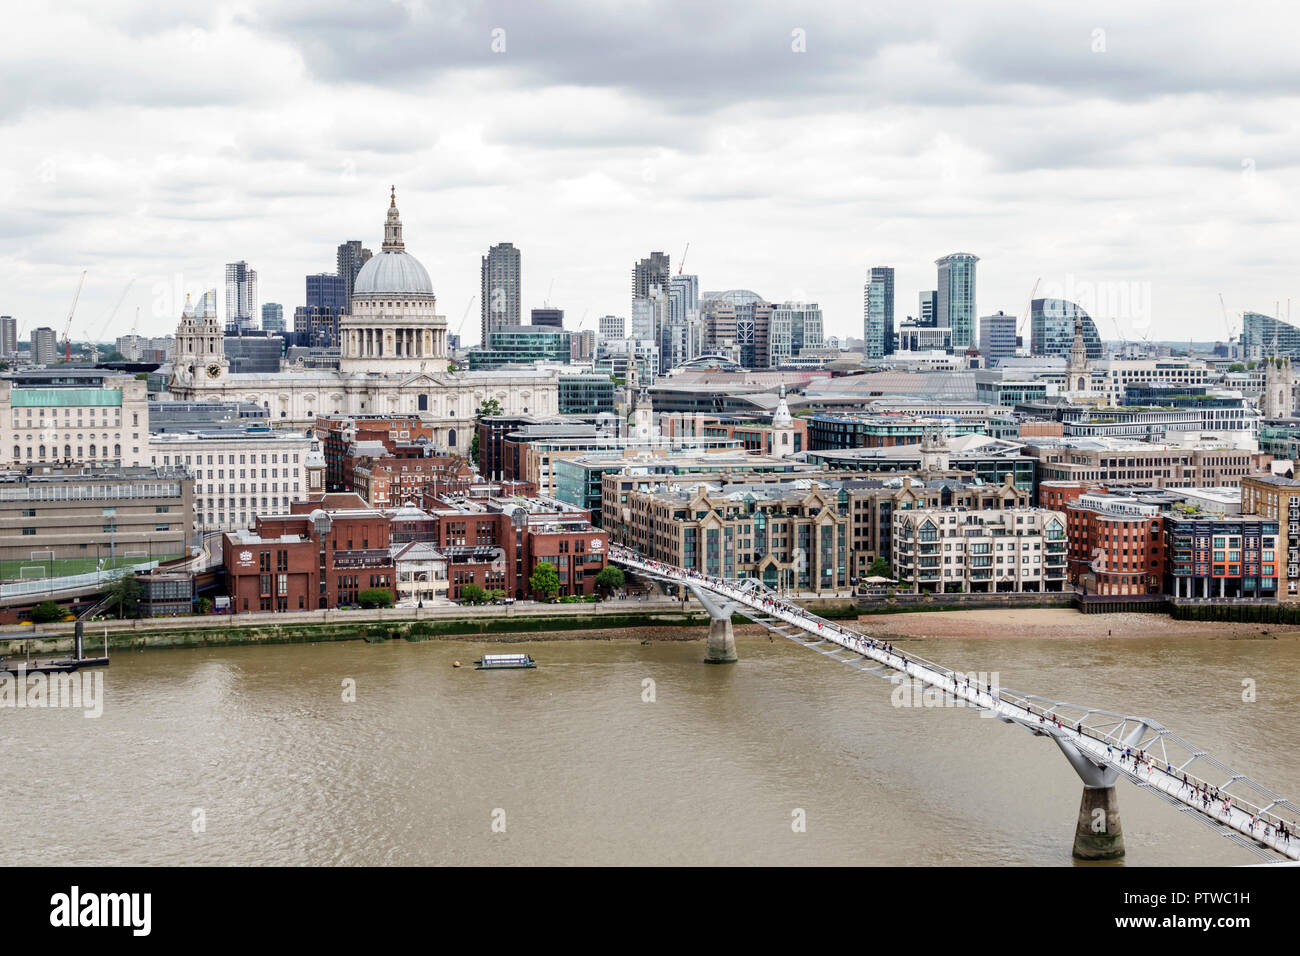 Londres Angleterre,Royaume-Uni,Bankside,Tamise,Tate art moderne musée terrasse vue, horizon de la ville,ciel gris,Millennium Bridge,suspension Footbridge,St Paul's ca Banque D'Images